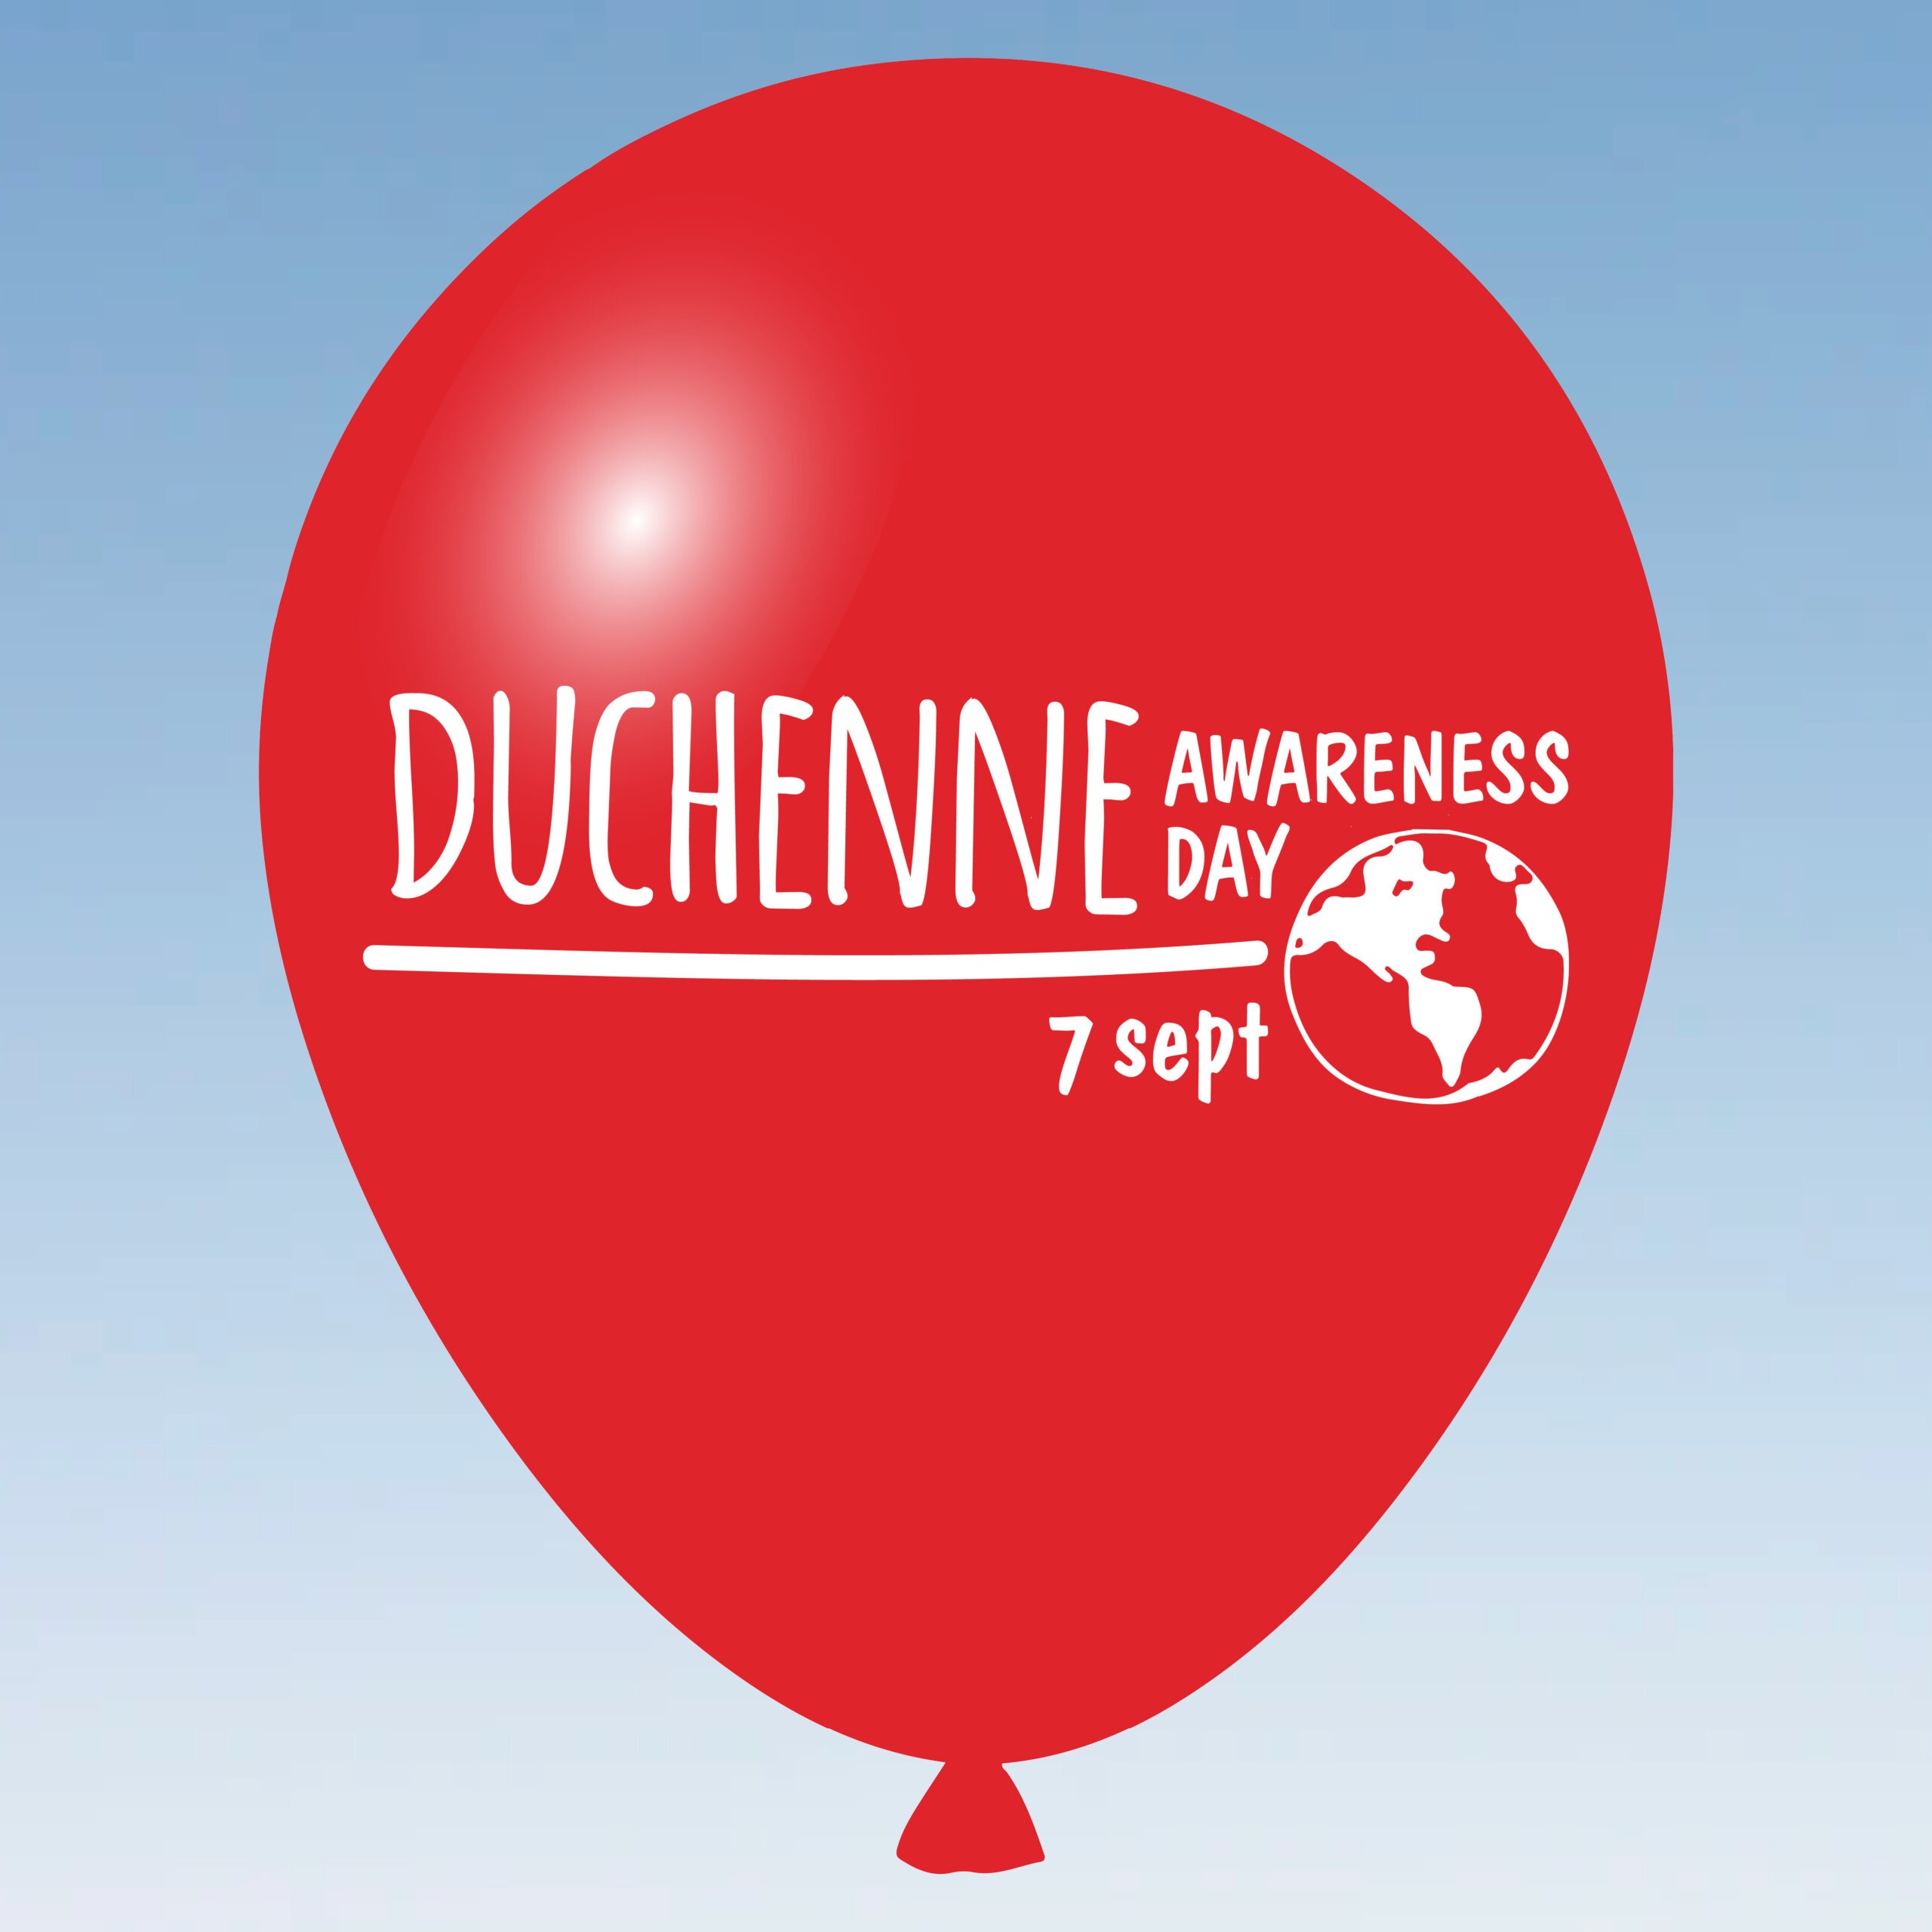 September 7 is World Duchenne Awareness Day